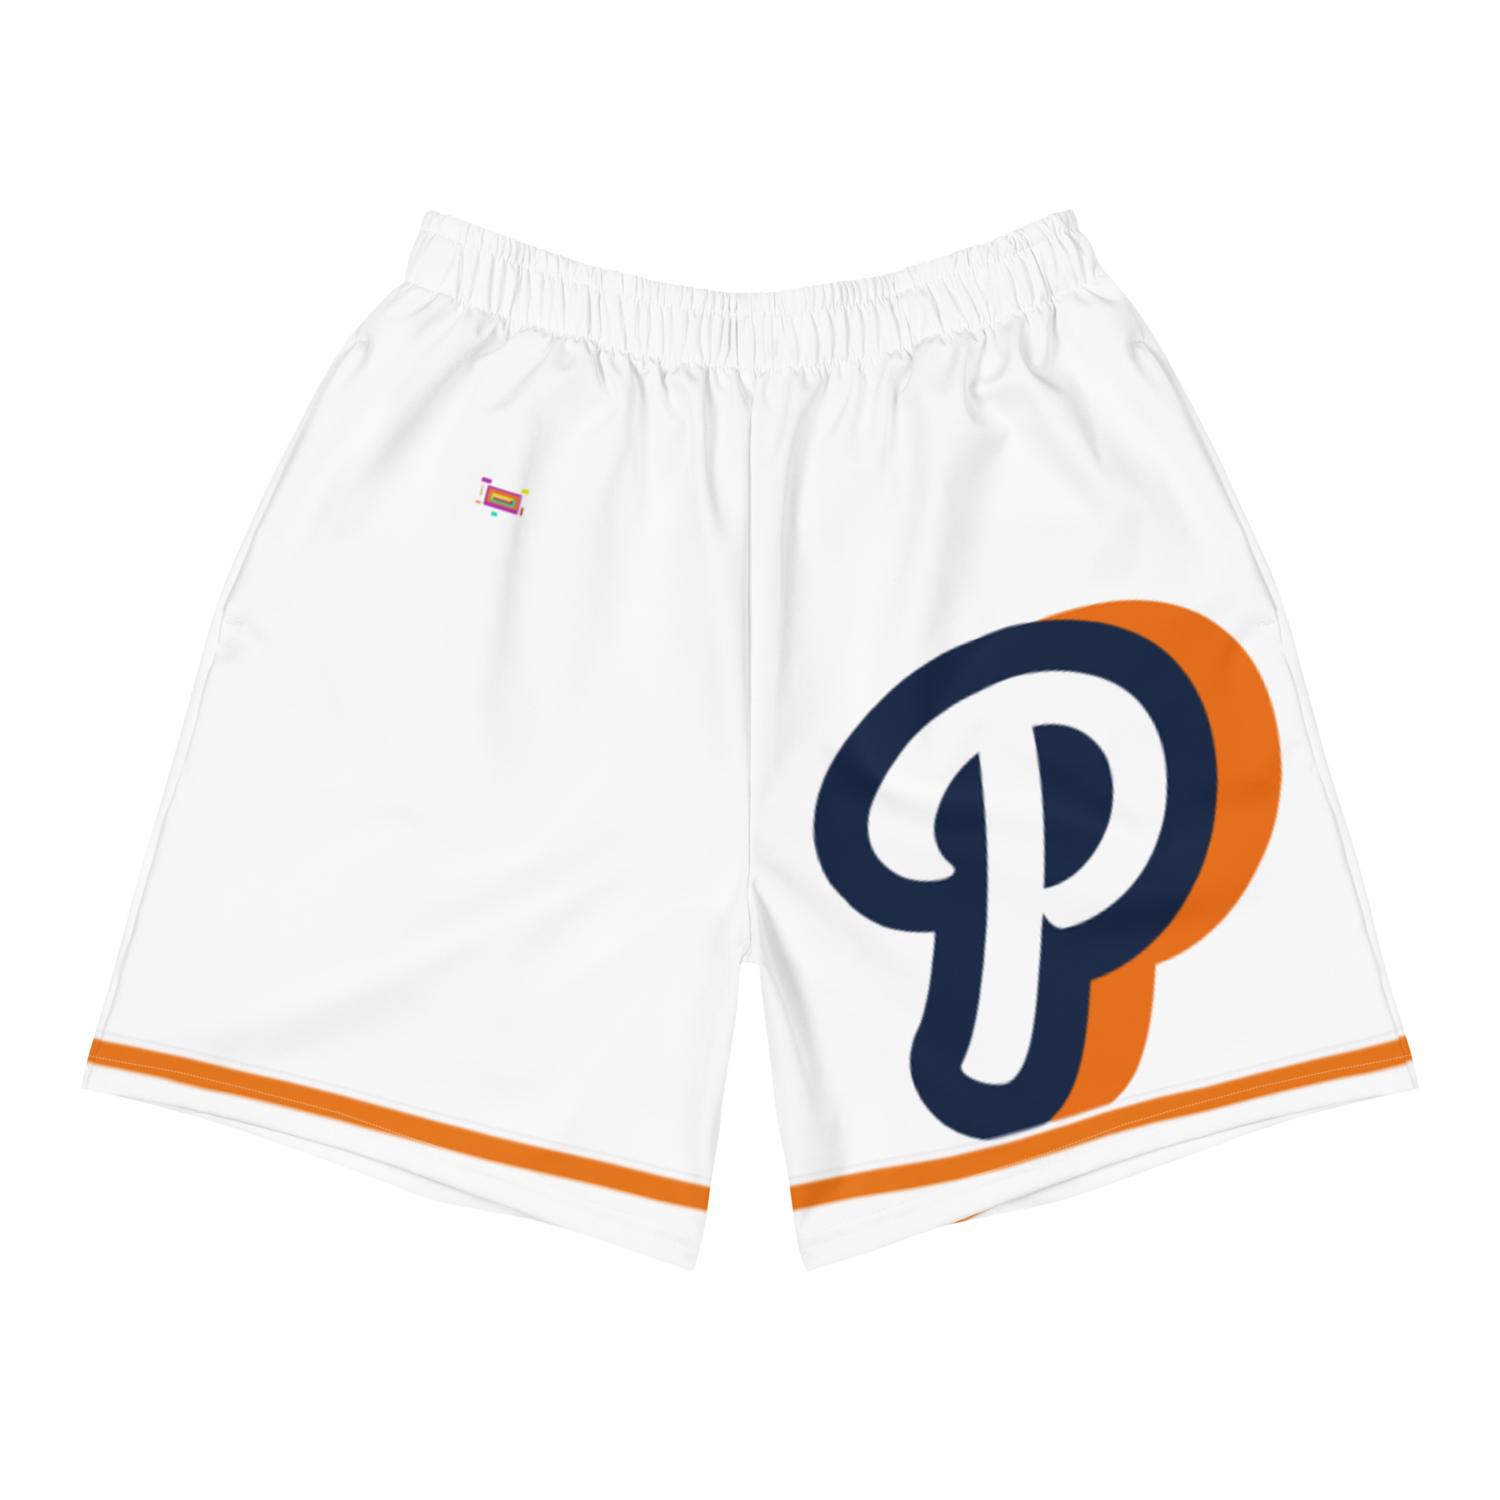 Big P 3.0 White Shorts